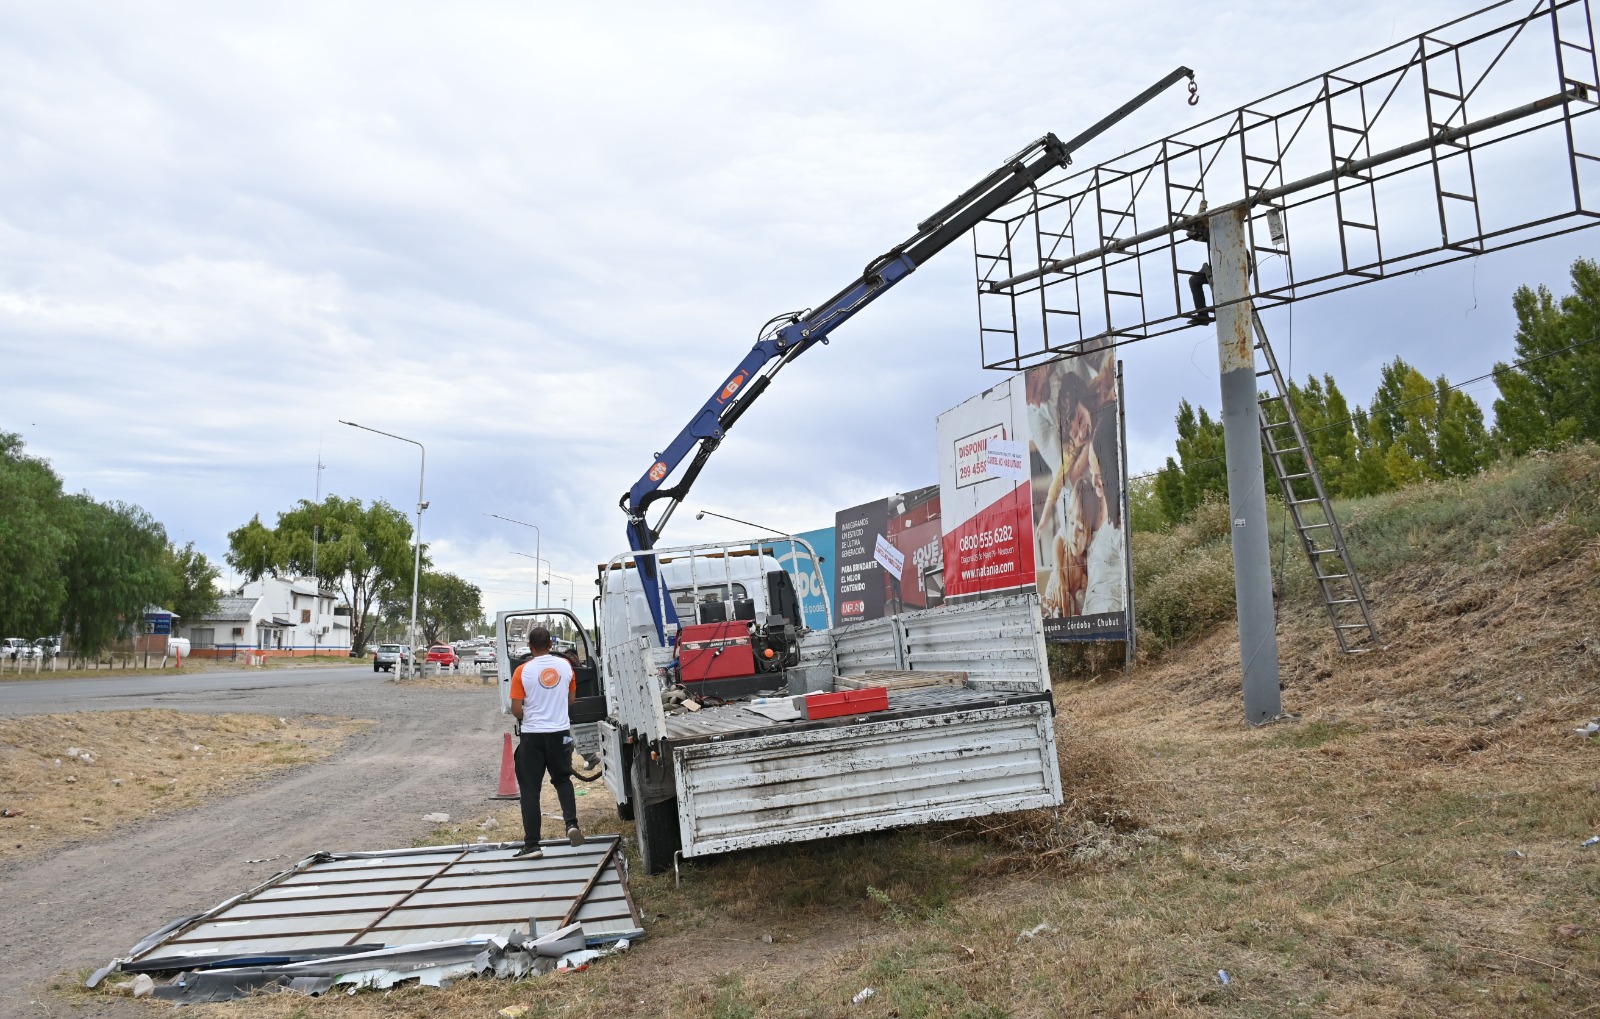 Quitan cartelería no autorizada en el ingreso al puente carretero Cipolletti - Neuquén. Foto: Florencia Salto